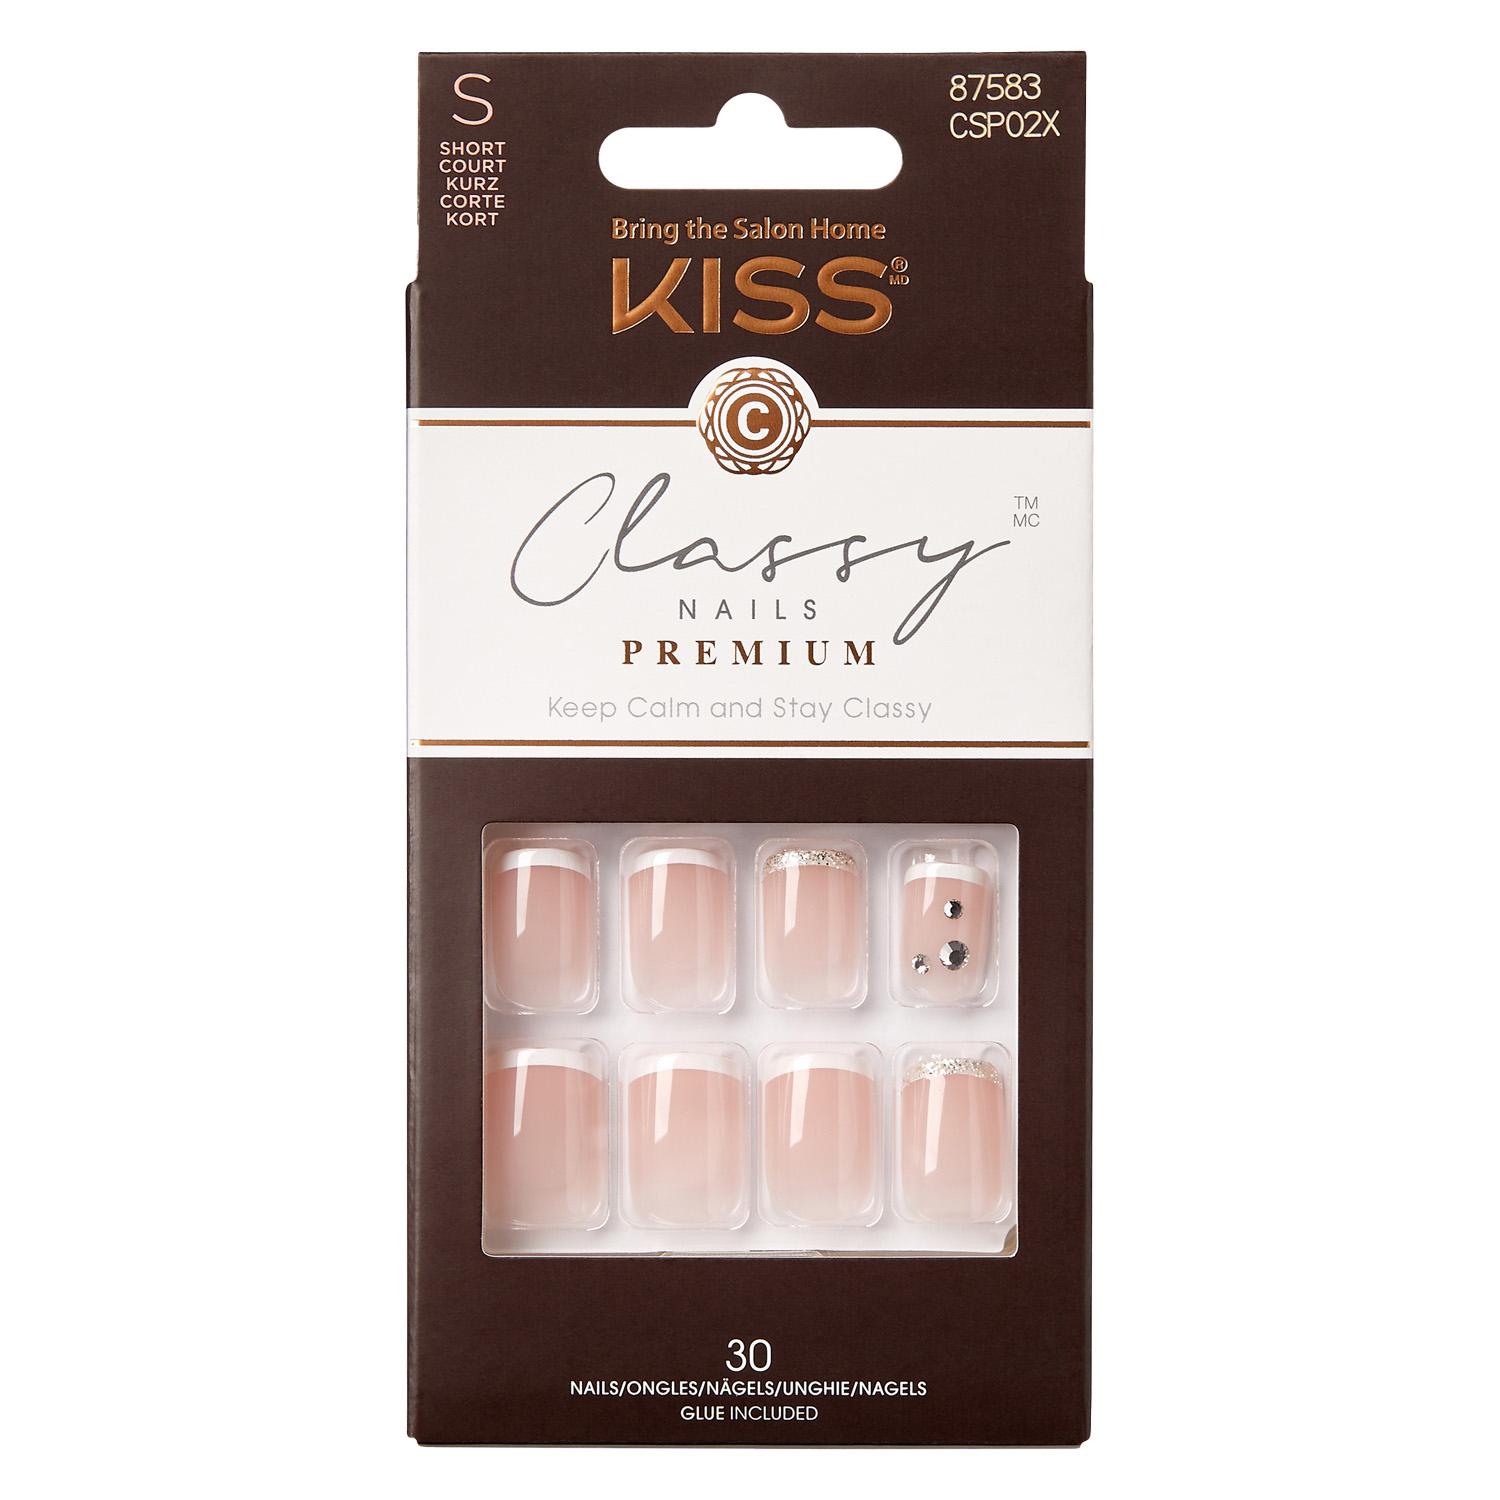 KISS Nails - Classy Premium Glitter French Gorgeous